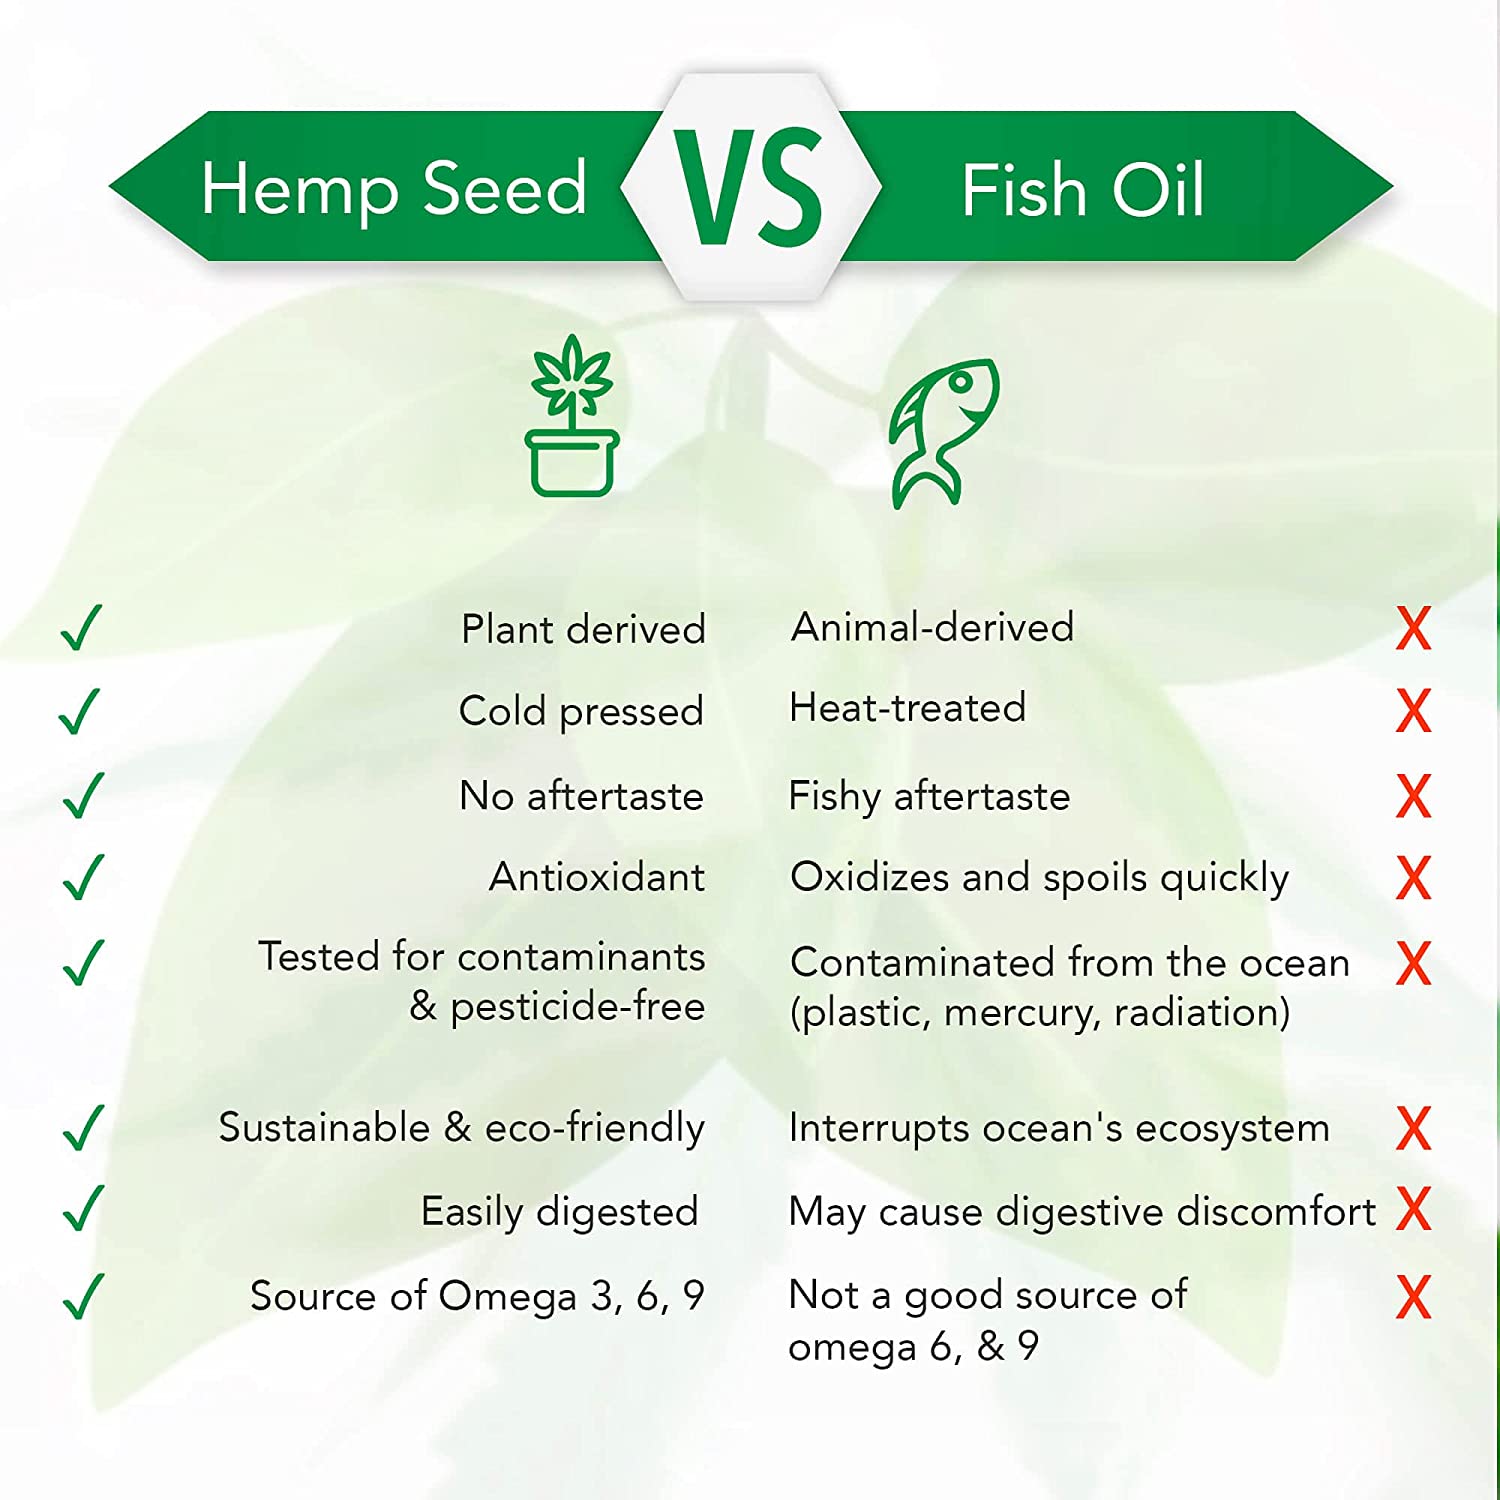 5Kind Cannabis Sativa Seed Oil 1000mg Softgels